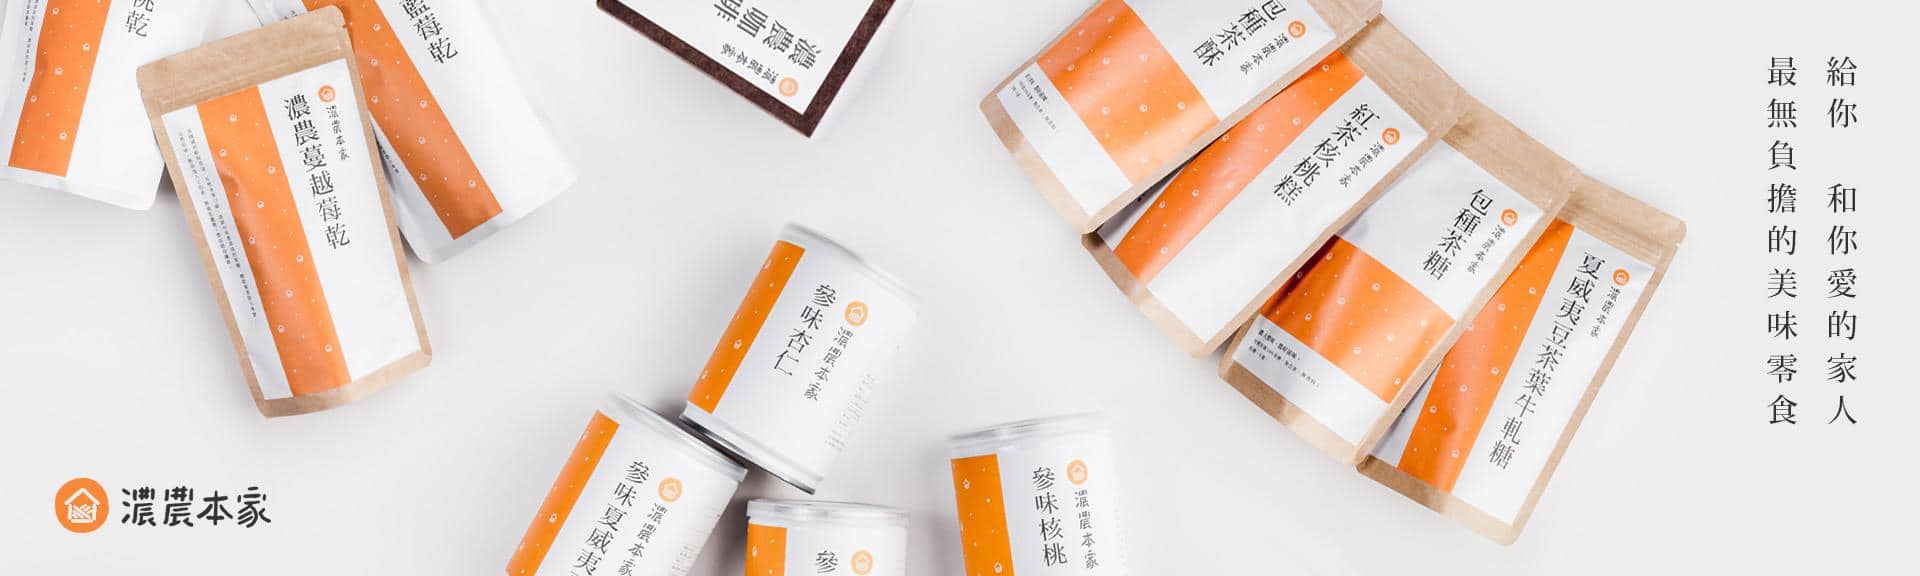 我是濃農本家，是一個很喜的「台灣茶葉」與不同的健康零食品牌，替許多知名企業、政府進行禮贈化！「內容物客製」與「結合其他制禮品牌的禮品」製作”喔，如果你也送禮需要討論，也可以找我們看看！  